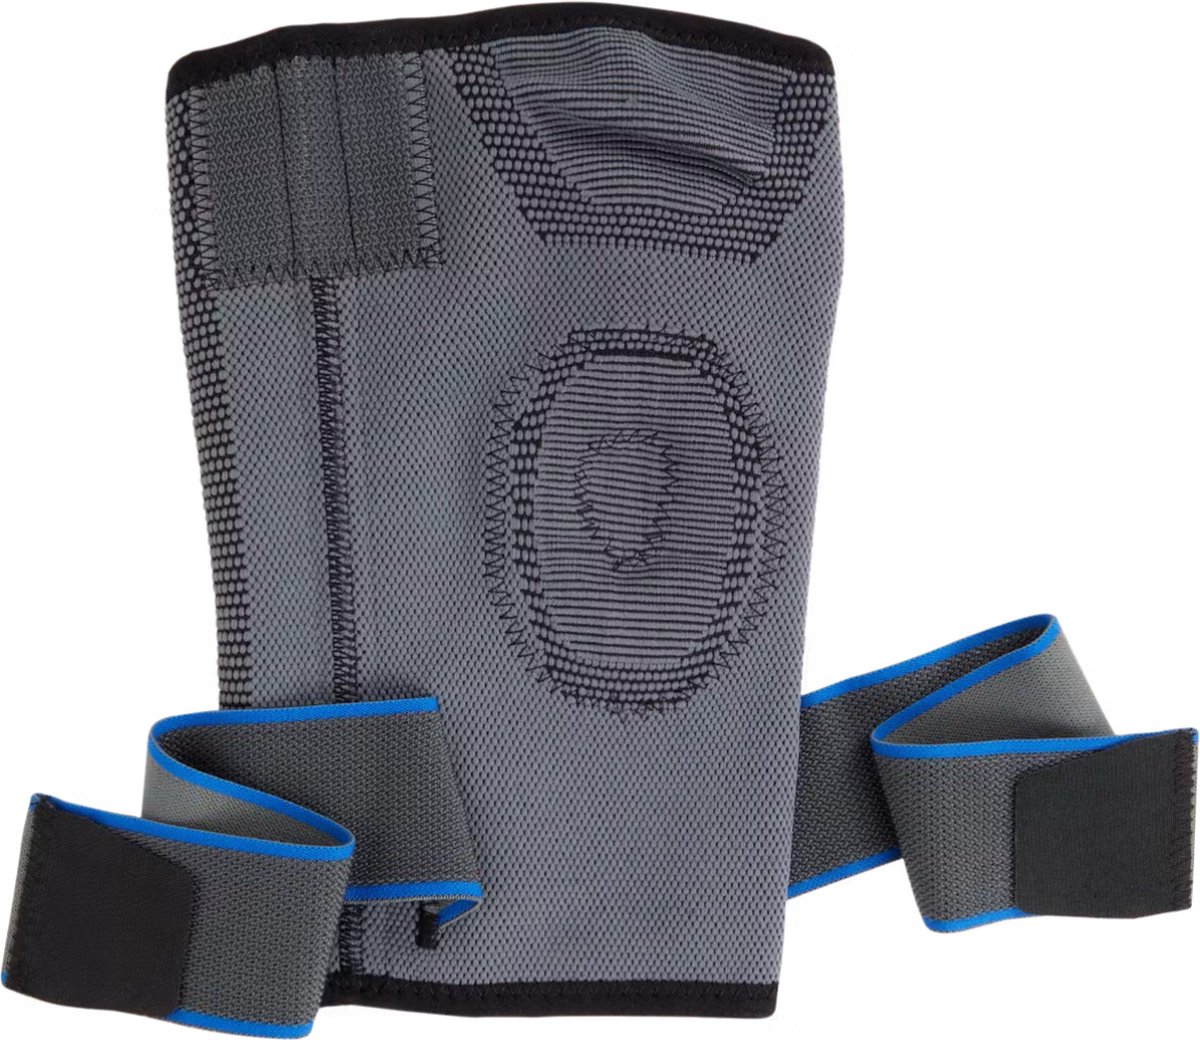 Premium Kniebrace Maat M/L - Verstelbare Kniestabilisator voor Optimaal Comfort en Ondersteuning - Geschikt voor Sport, Herstel en Dagelijks Gebruik - Ademende en Duurzame Knieband - Kniebandage